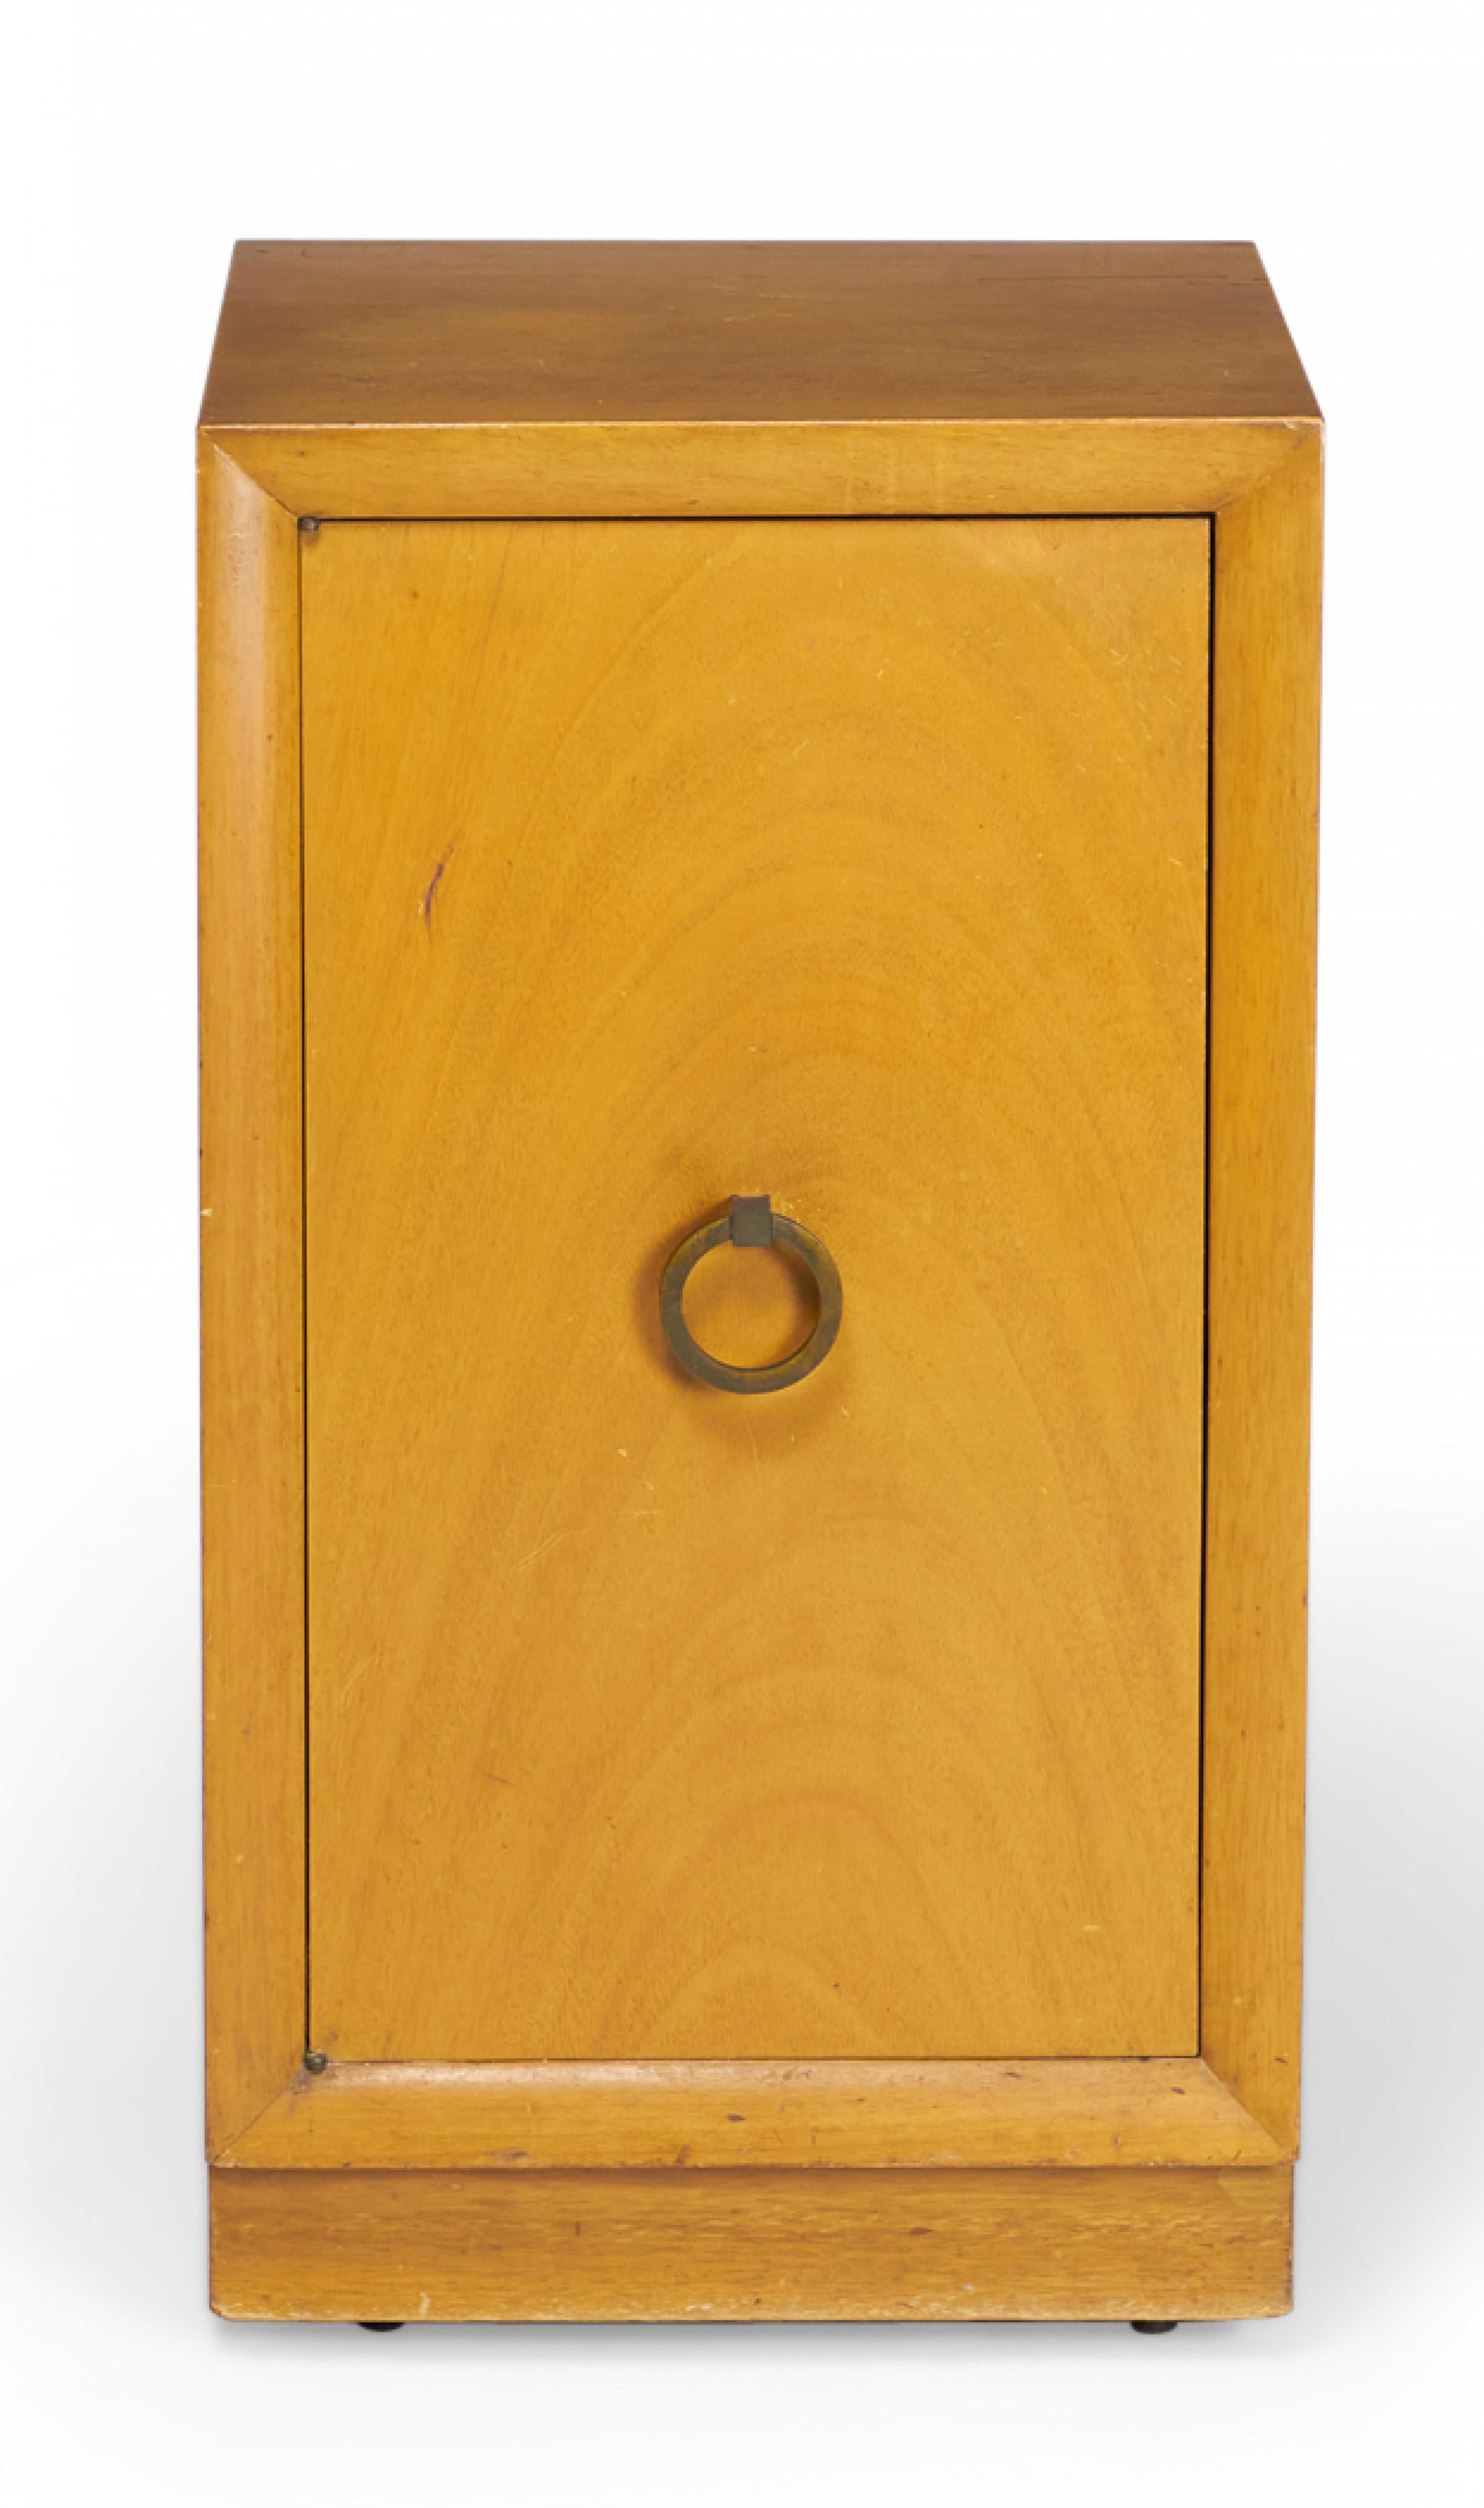 Amerikanischer Nachttisch / Hochschrank aus blondem Ahornholz aus der Mitte des Jahrhunderts mit einem einzigen Fach, das durch eine Flügeltür mit einem bronzenen Türgriff verdeckt wird. (WIDDICOMB MODERN)(Ähnliche Schränke: DUF0149B, DUF0149C)
 